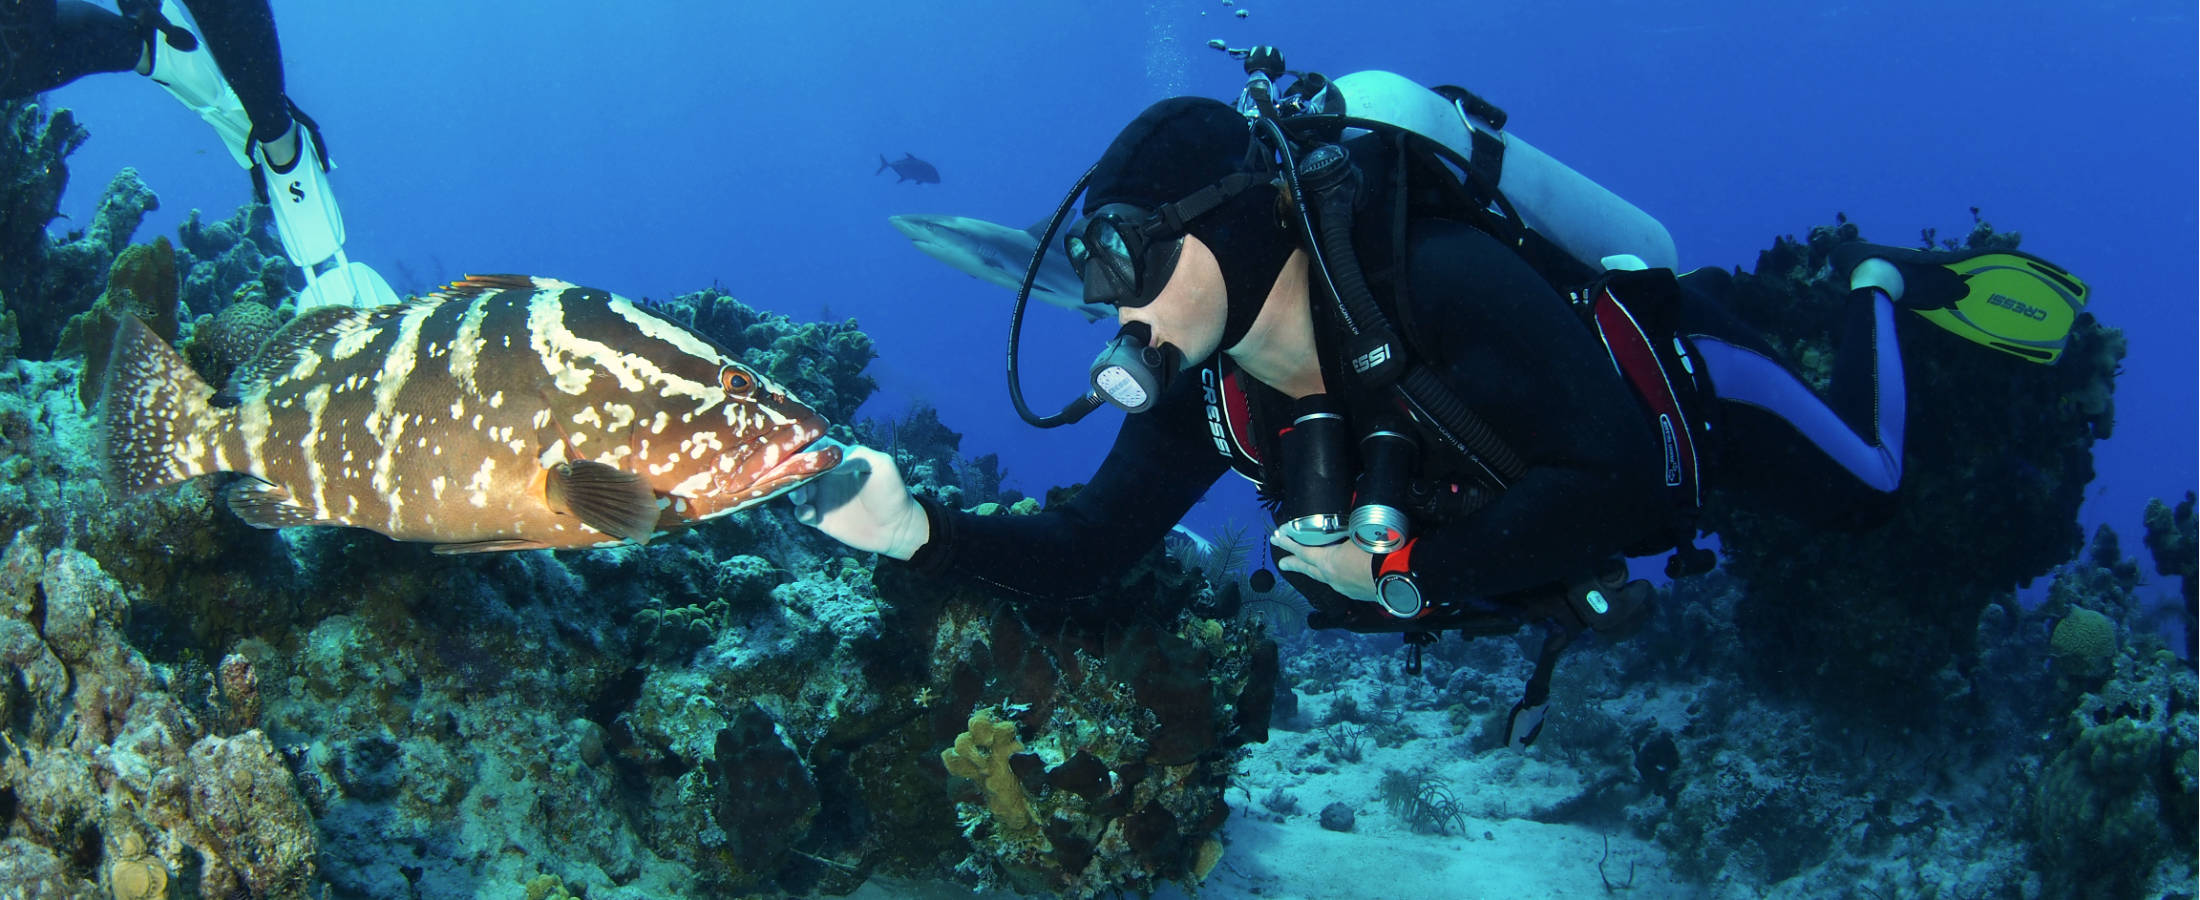 Bahamas Scuba Diving - Snapshot, Dive Site